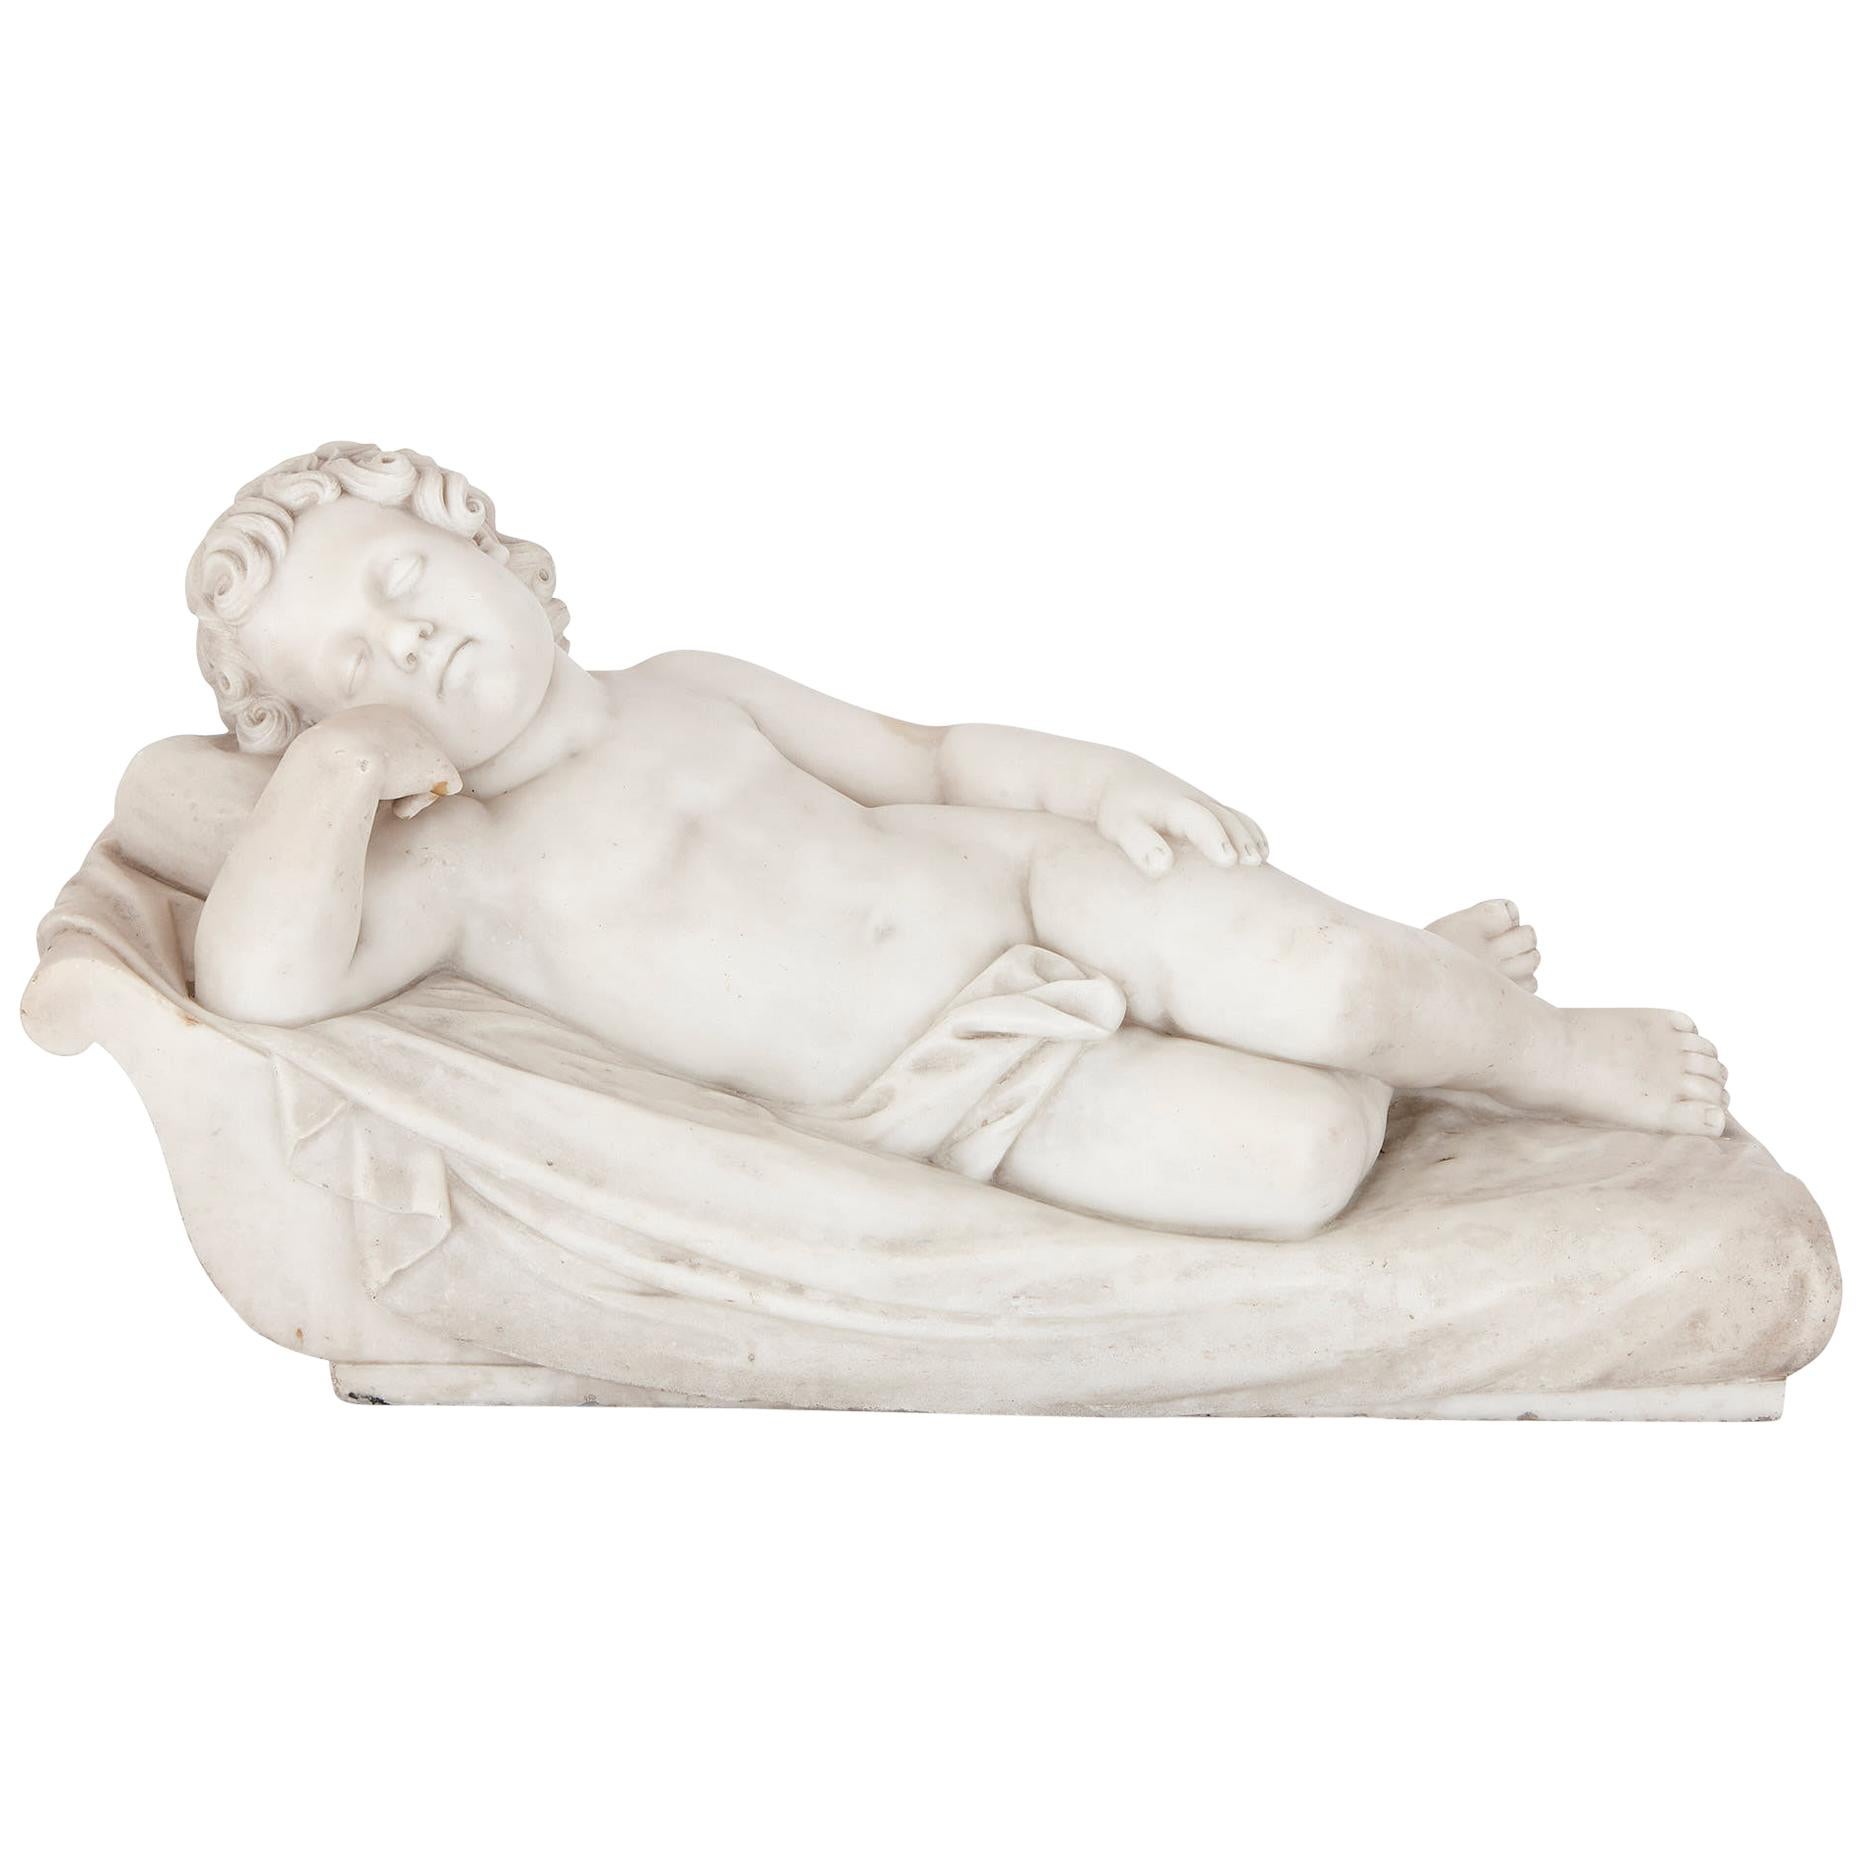 Marmorfigur eines schlafenden Kindes im Renaissance-Stil